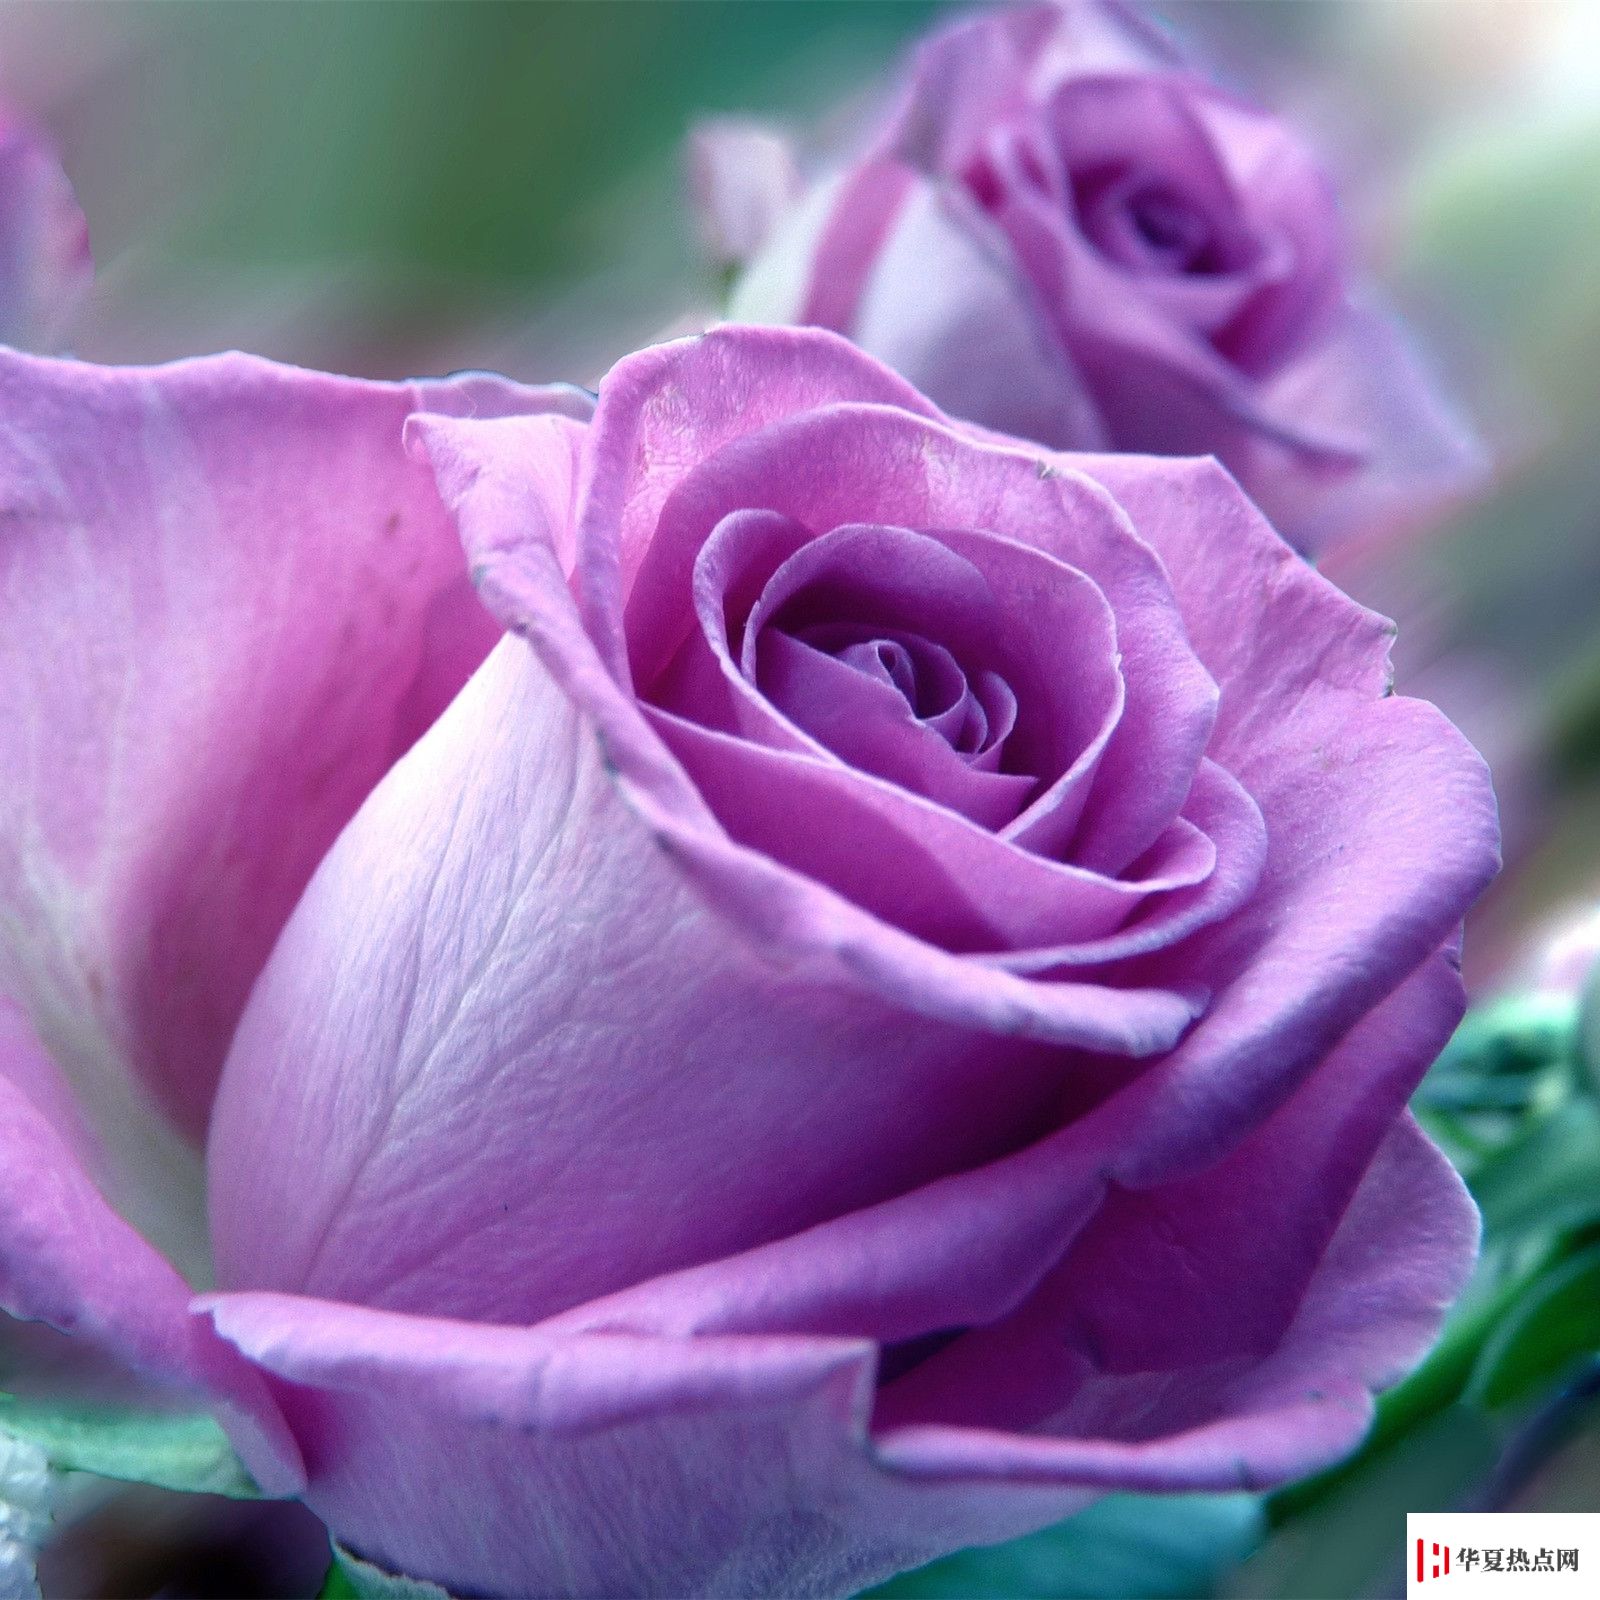 生活小知识 紫色玫瑰代表什么意思 华夏热点网